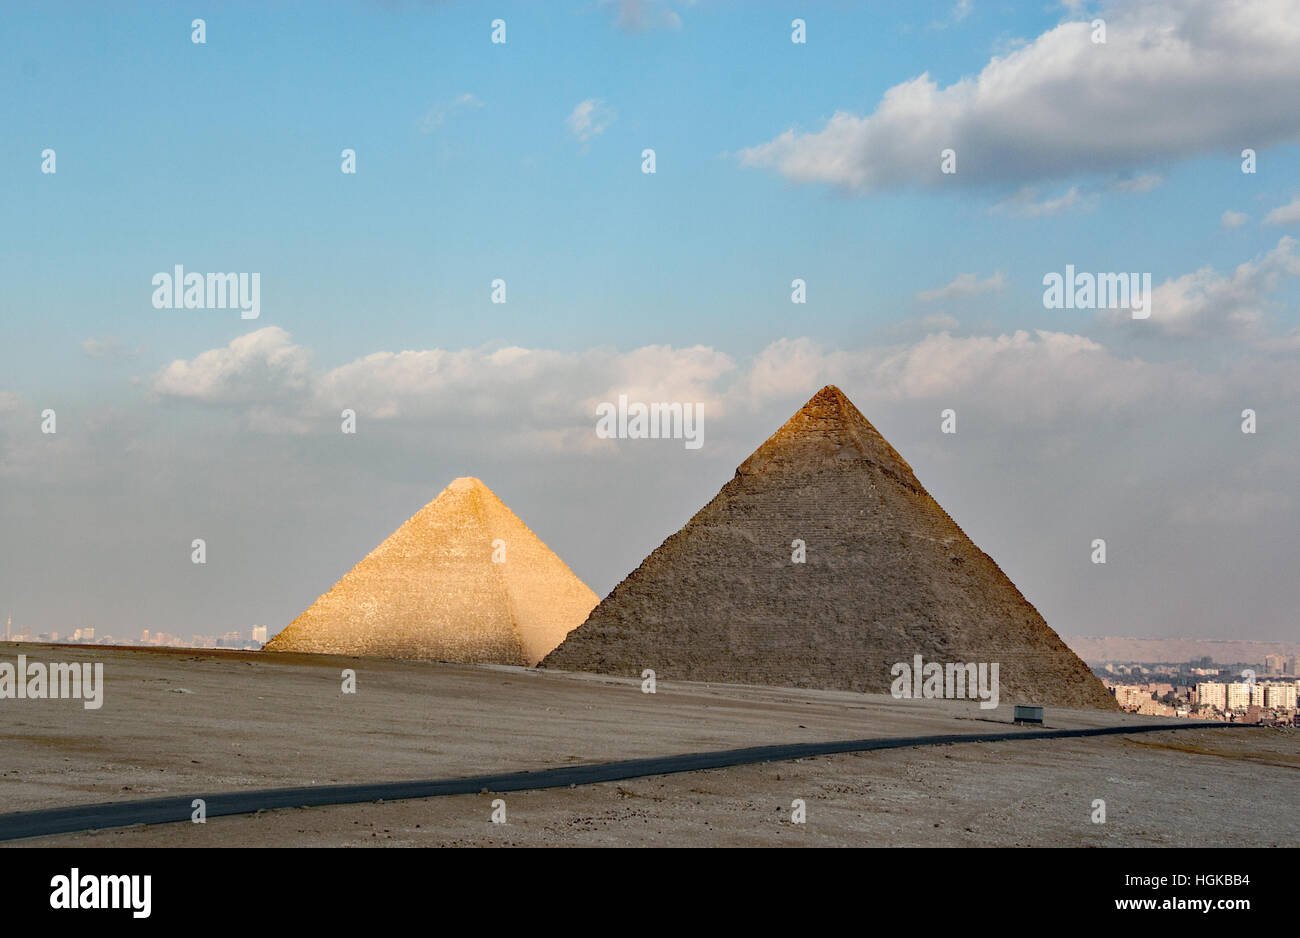 Die Pyramiden von Gizeh, im Südwesten von Kairo, ist geprägt durch die massiven Pyramiden von 4. Dynastie Herrscher von Ägypten gebaut. Stockfoto